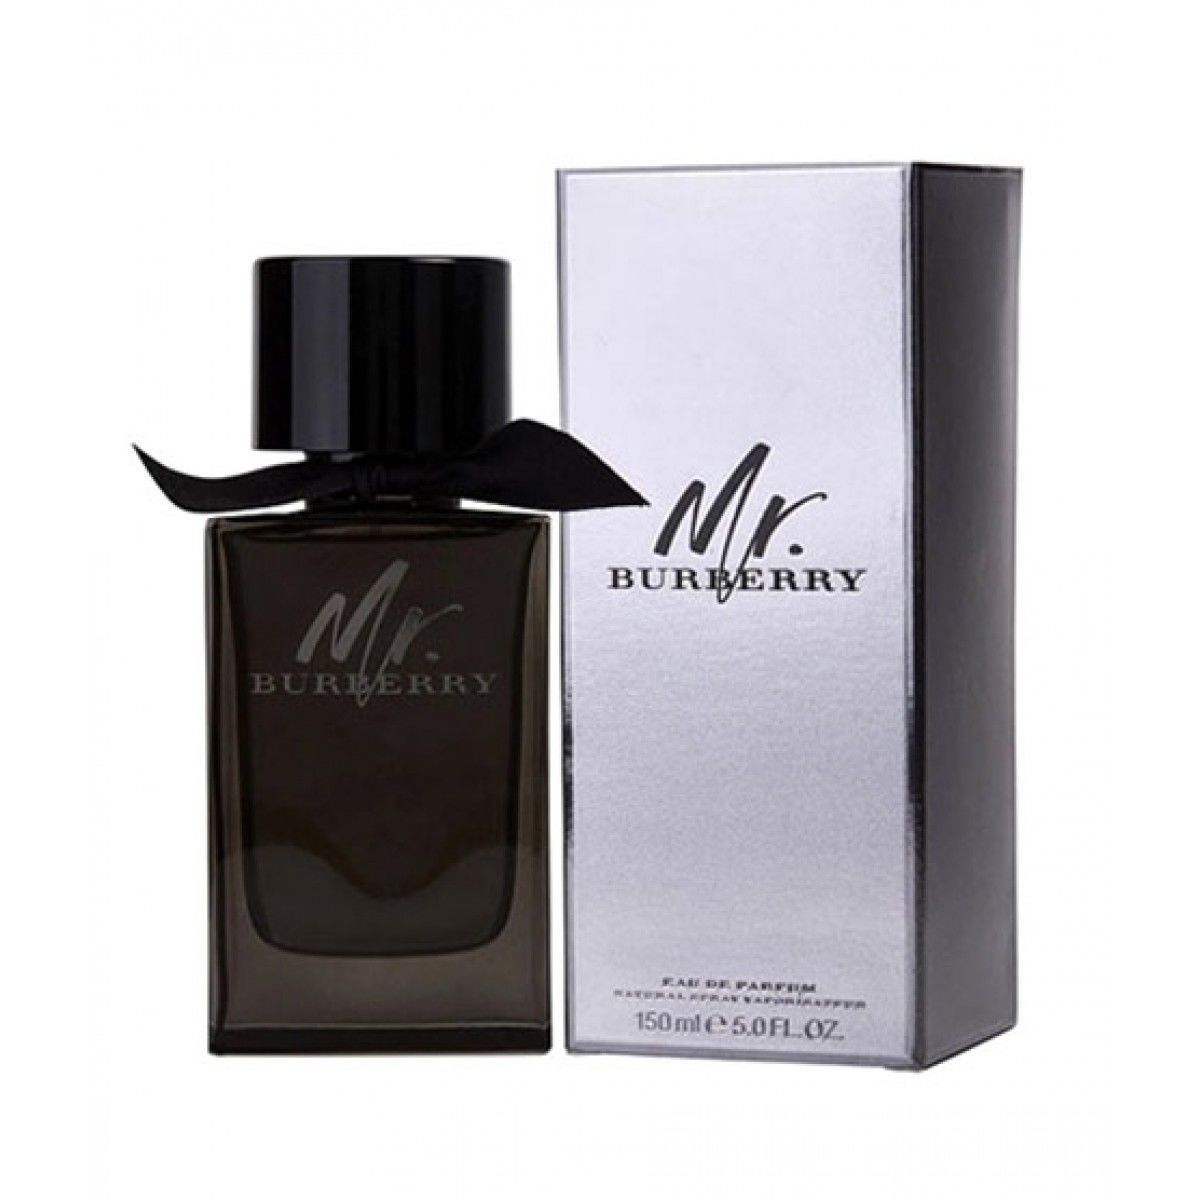 Burberry Mr. Burberry Eau De Parfum For Men 150ml